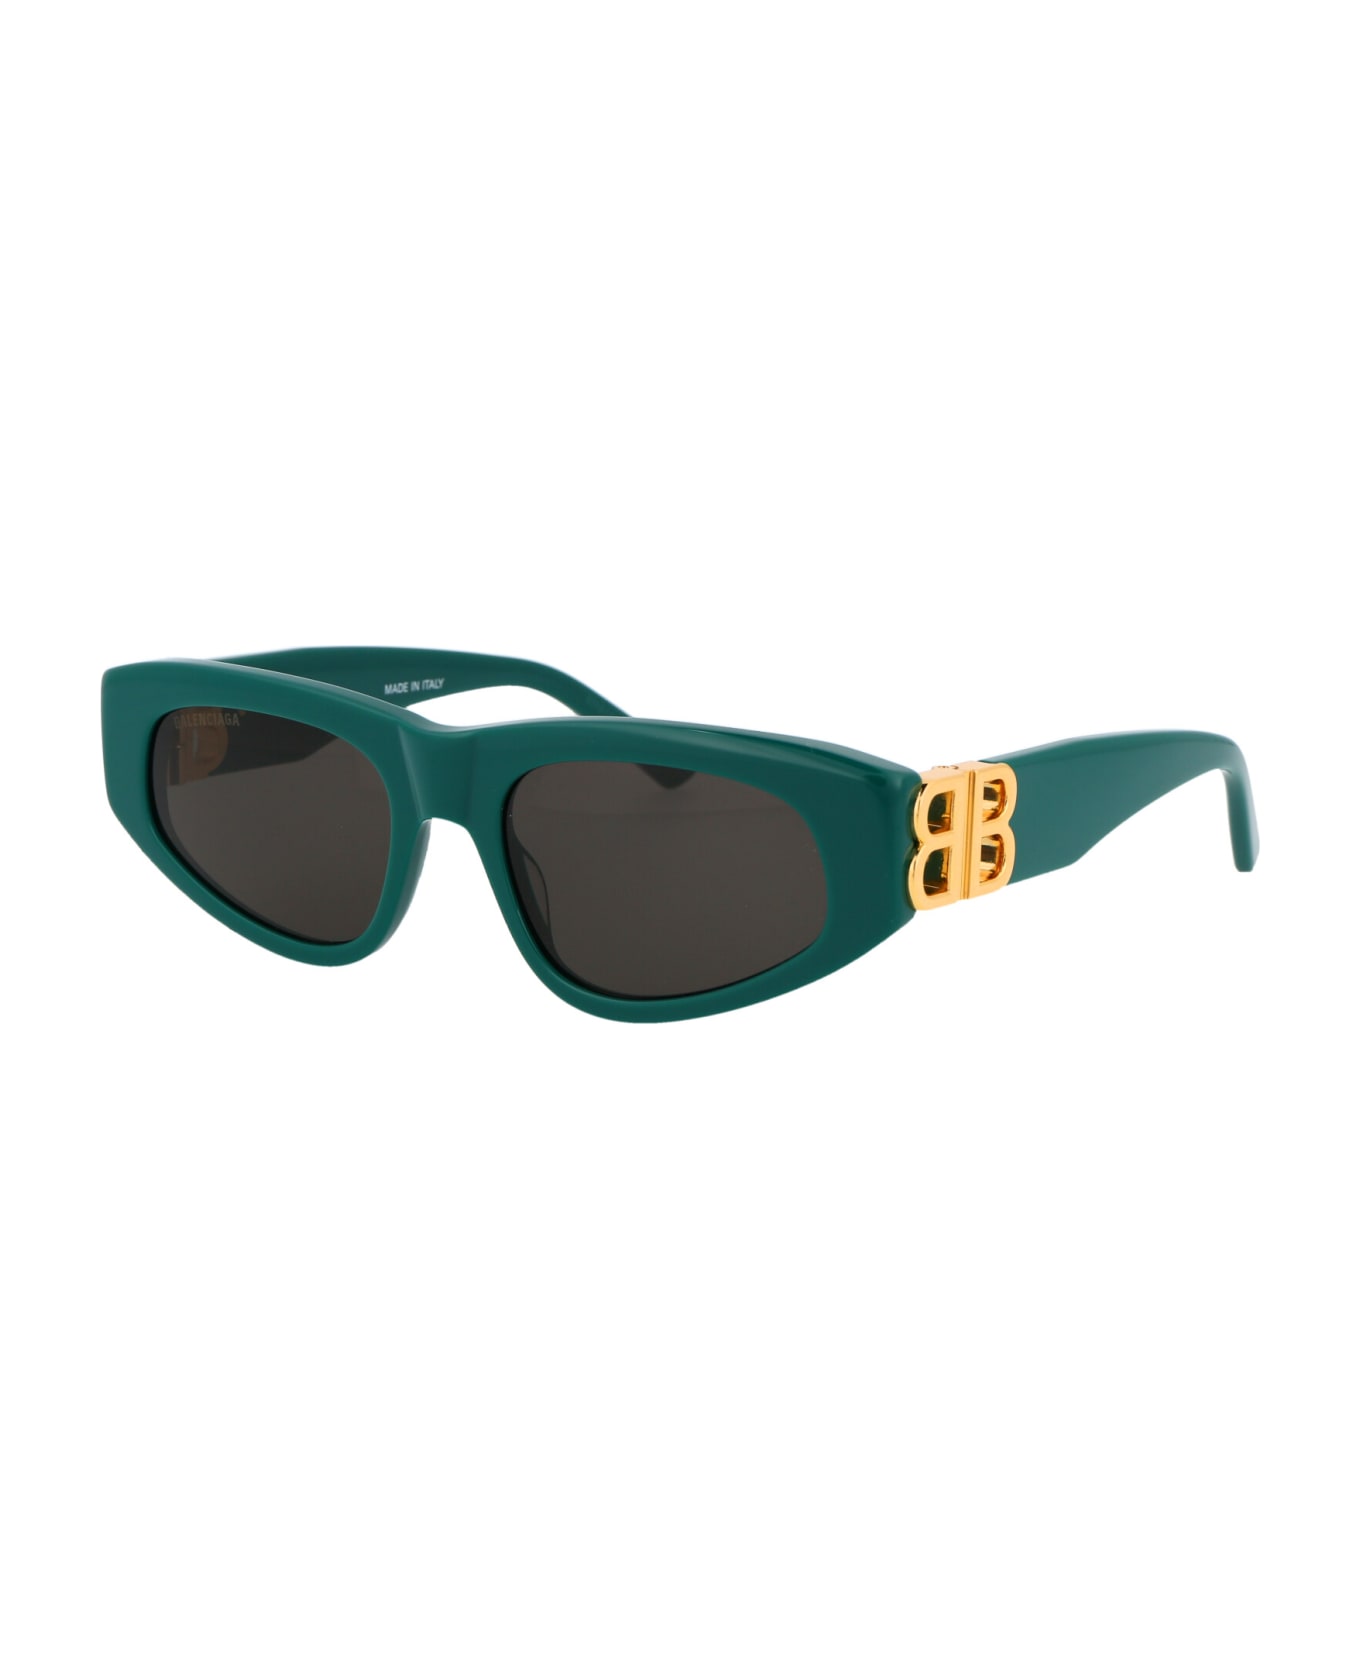 Balenciaga Eyewear Bb0095s Sunglasses - 005 GREEN GOLD GREY